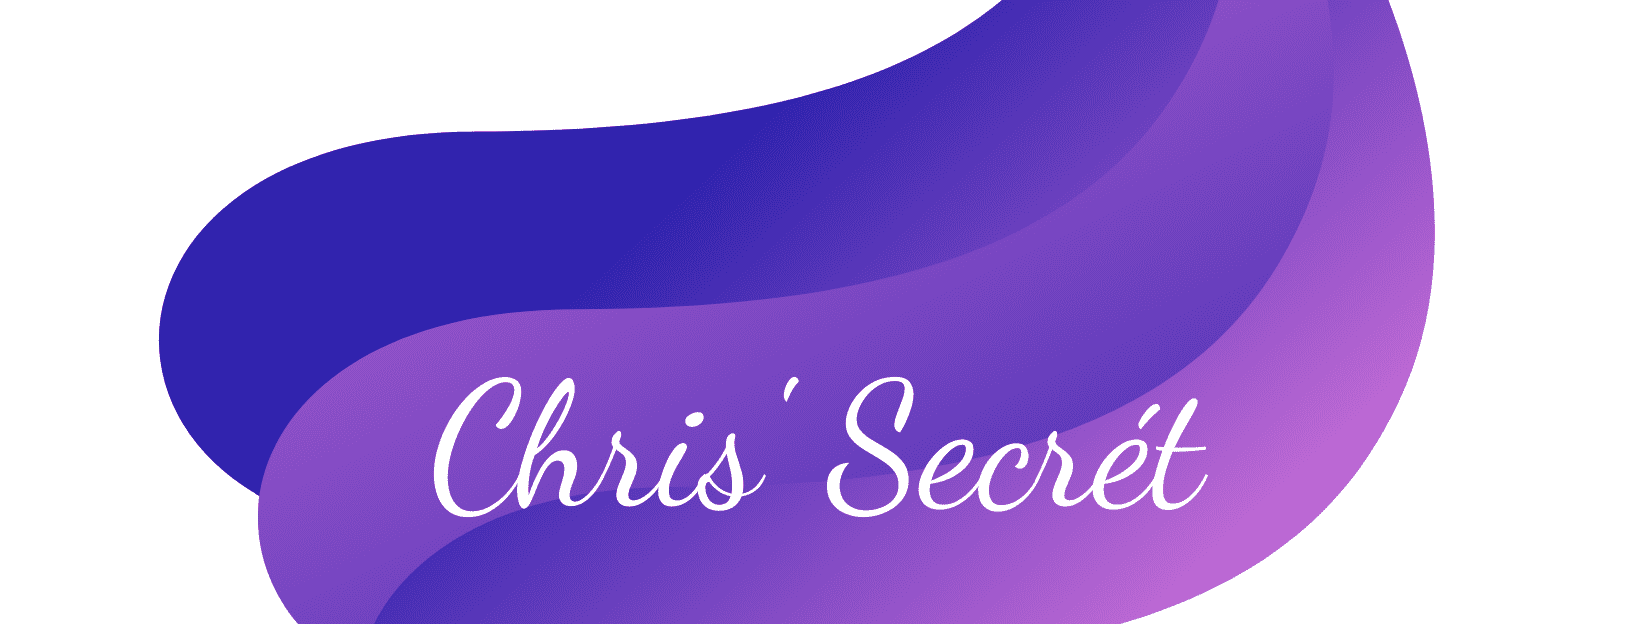 Chris'Secrét